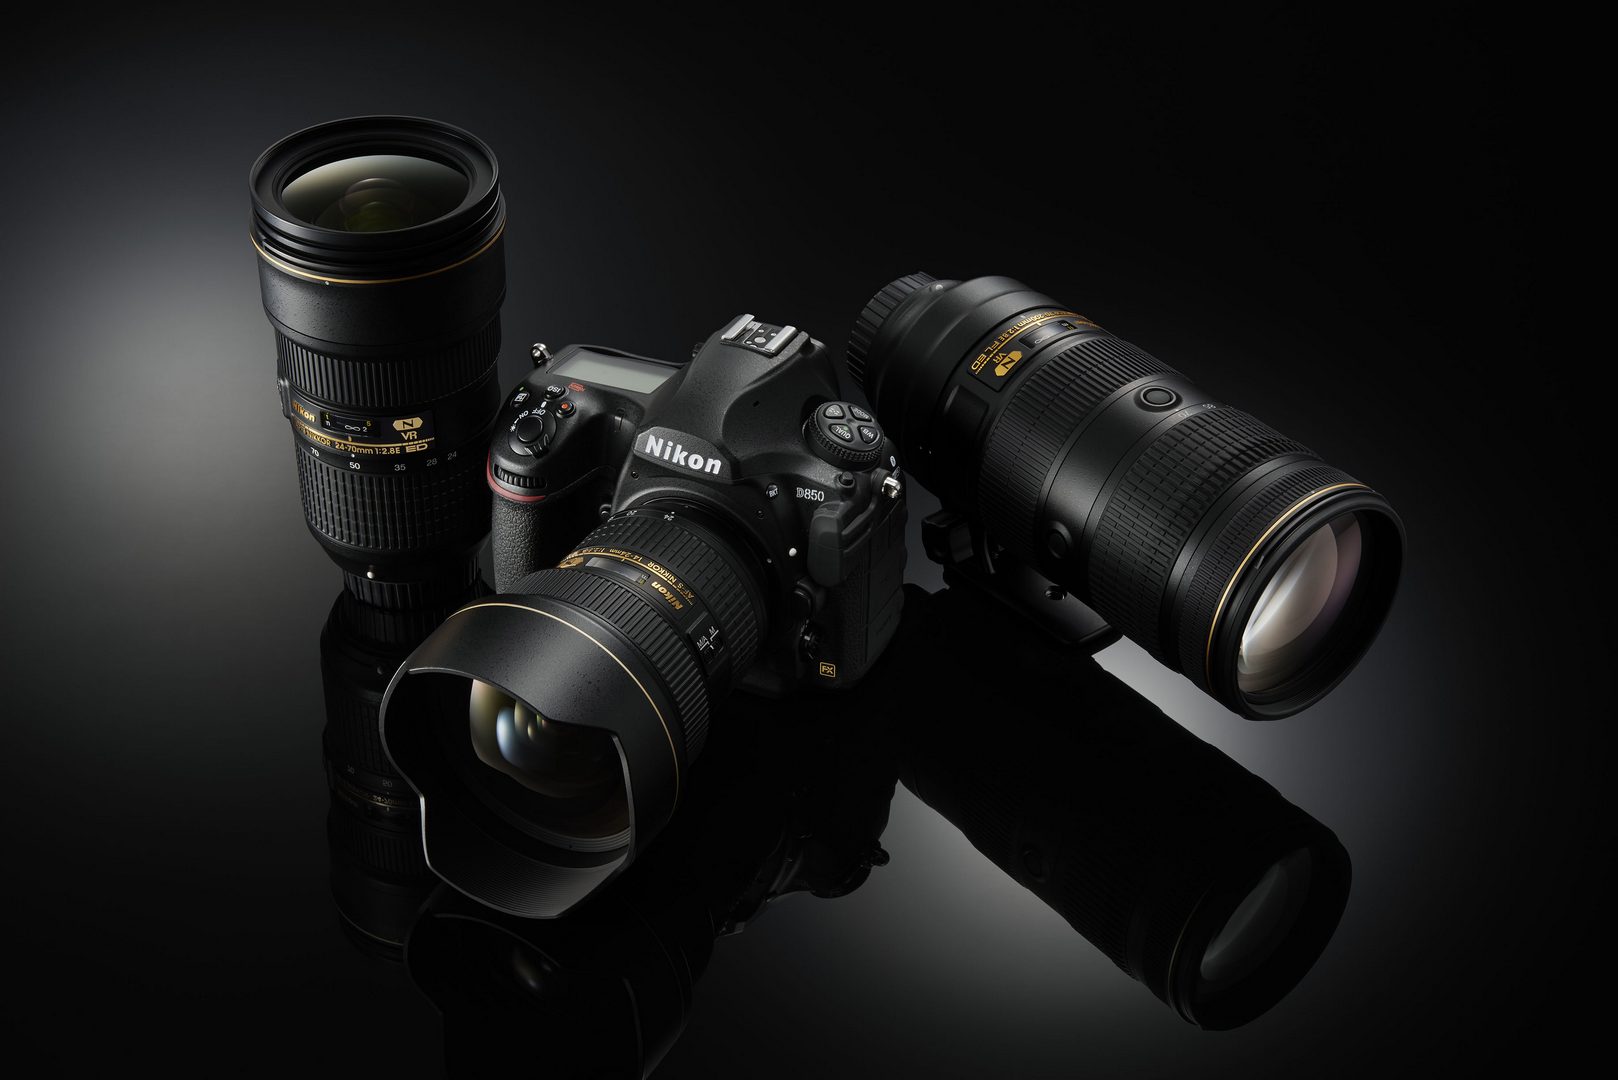 เปิดตัว Nikon D850 กล้อง Full Frame เจาะกลุ่มผู้ใช้มืออาชีพ